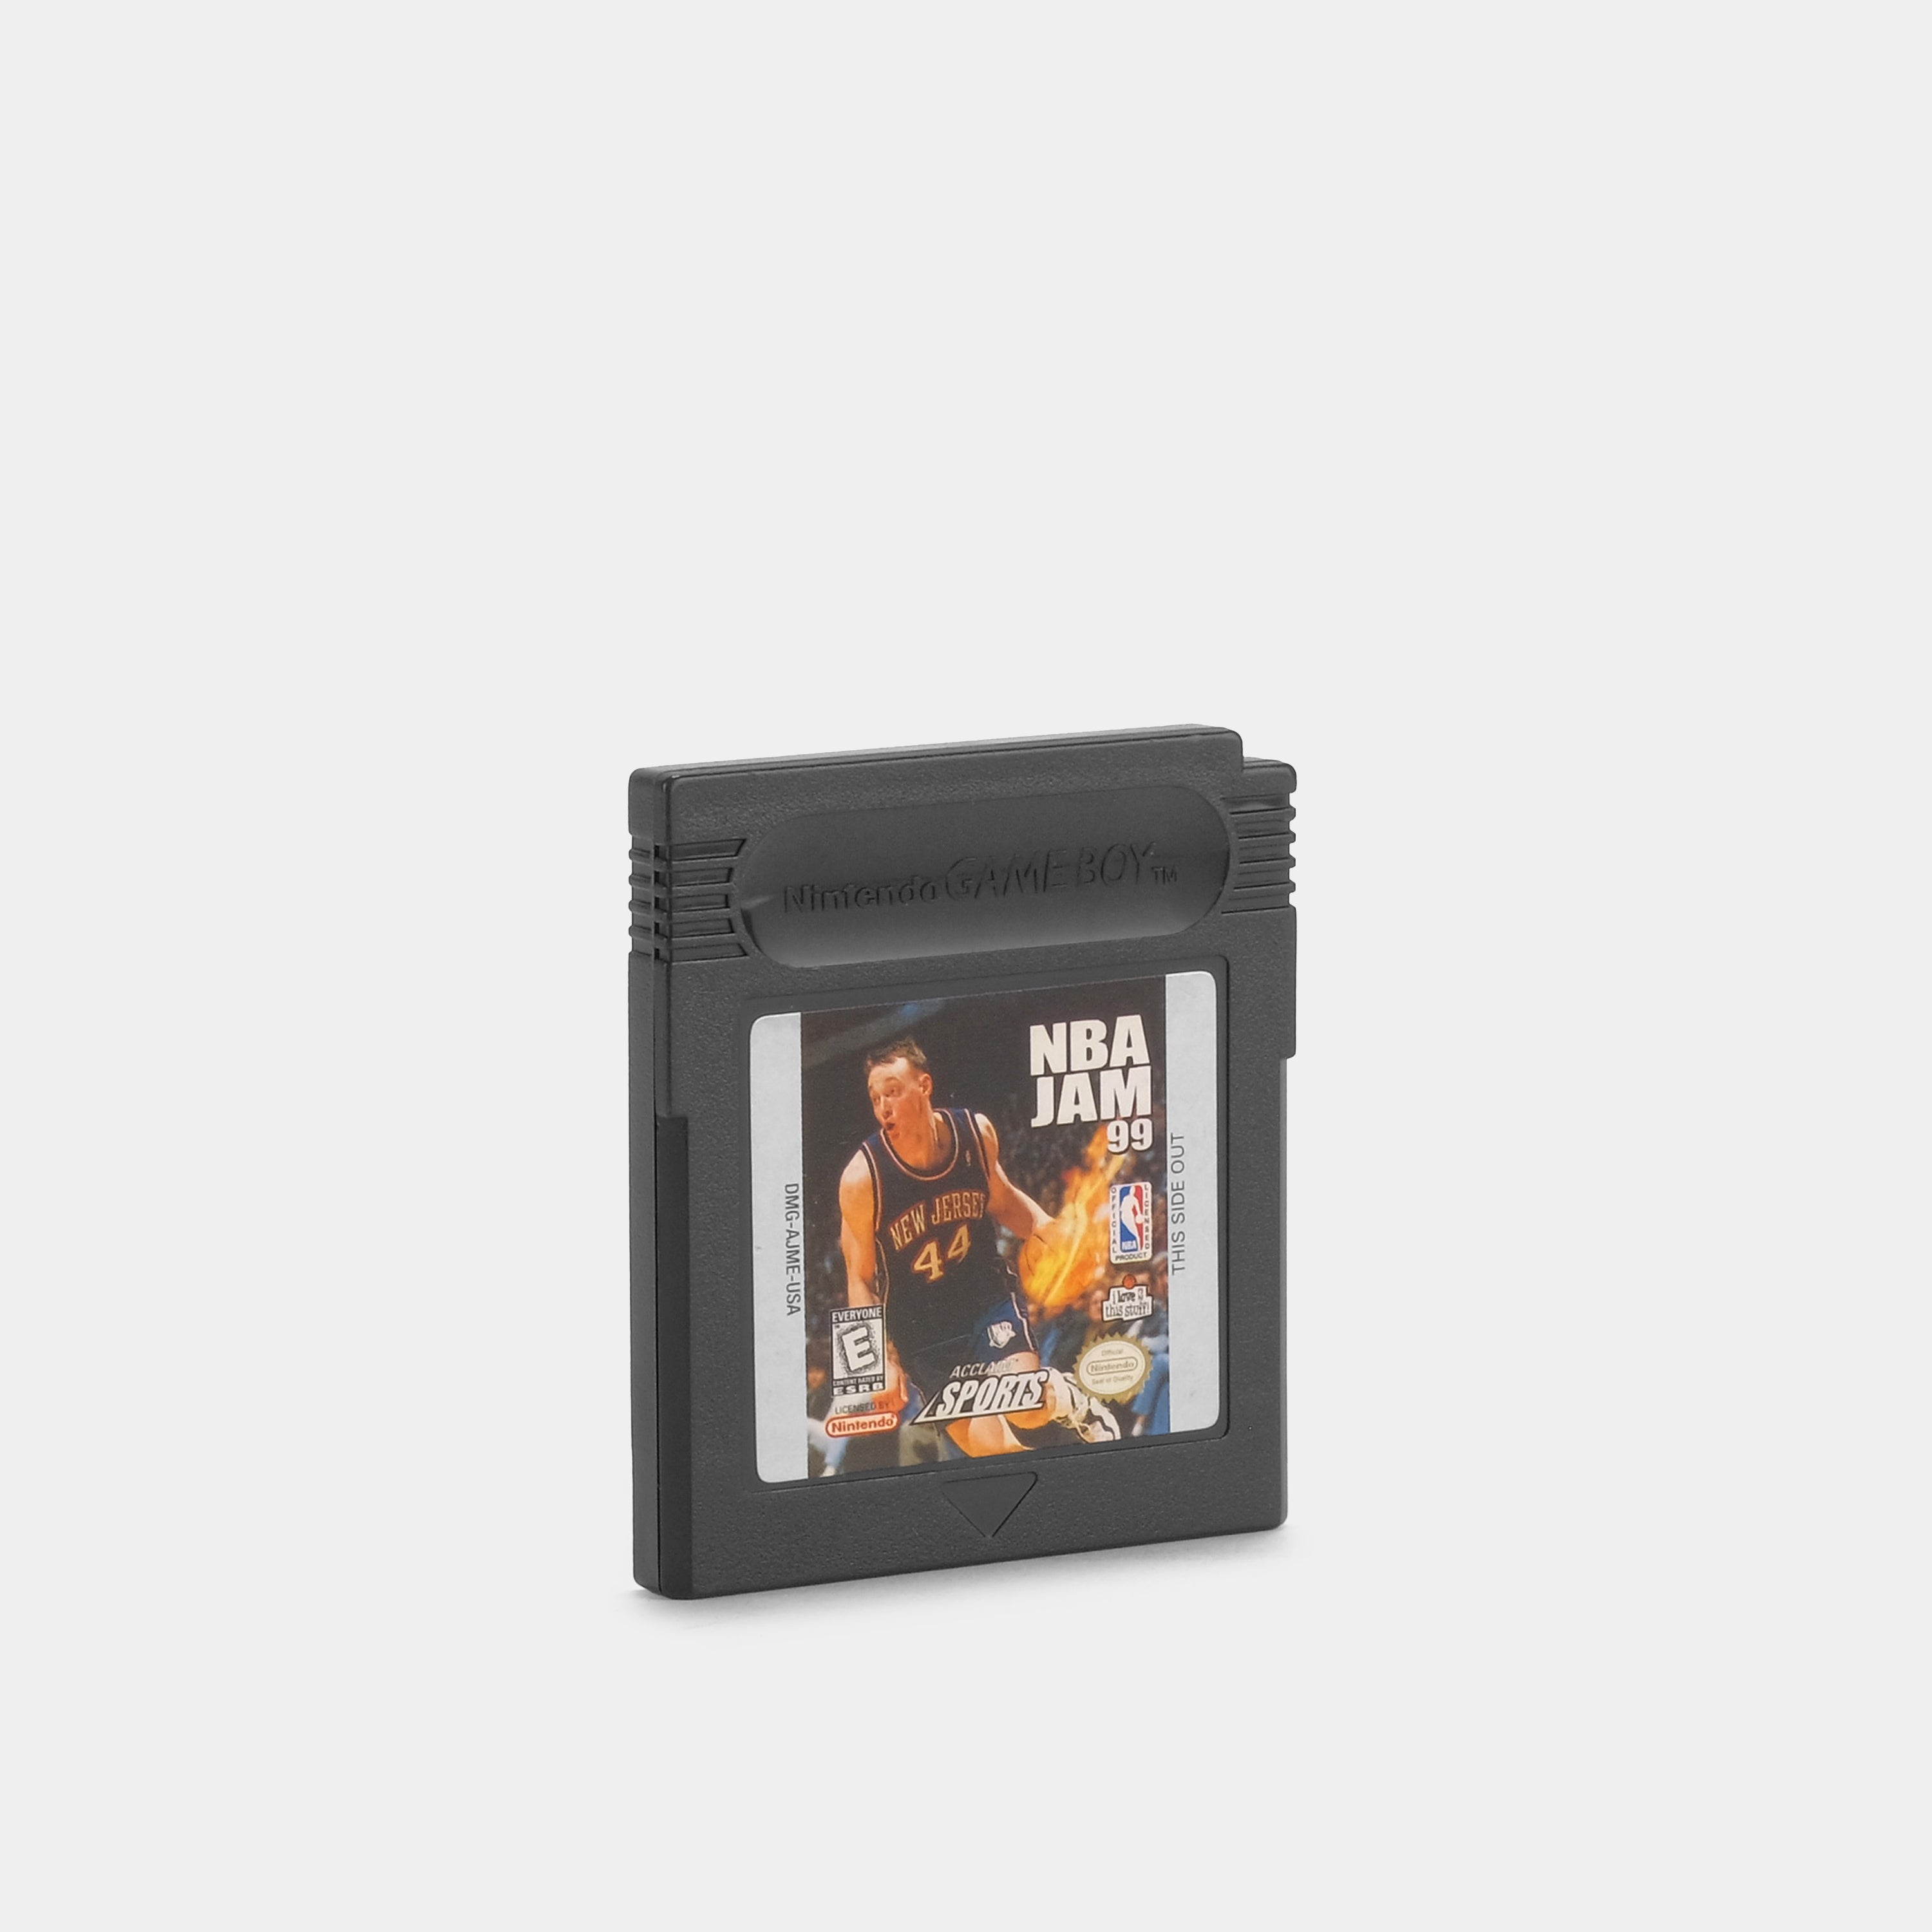 NBA Jam 99 Game Boy Color Game